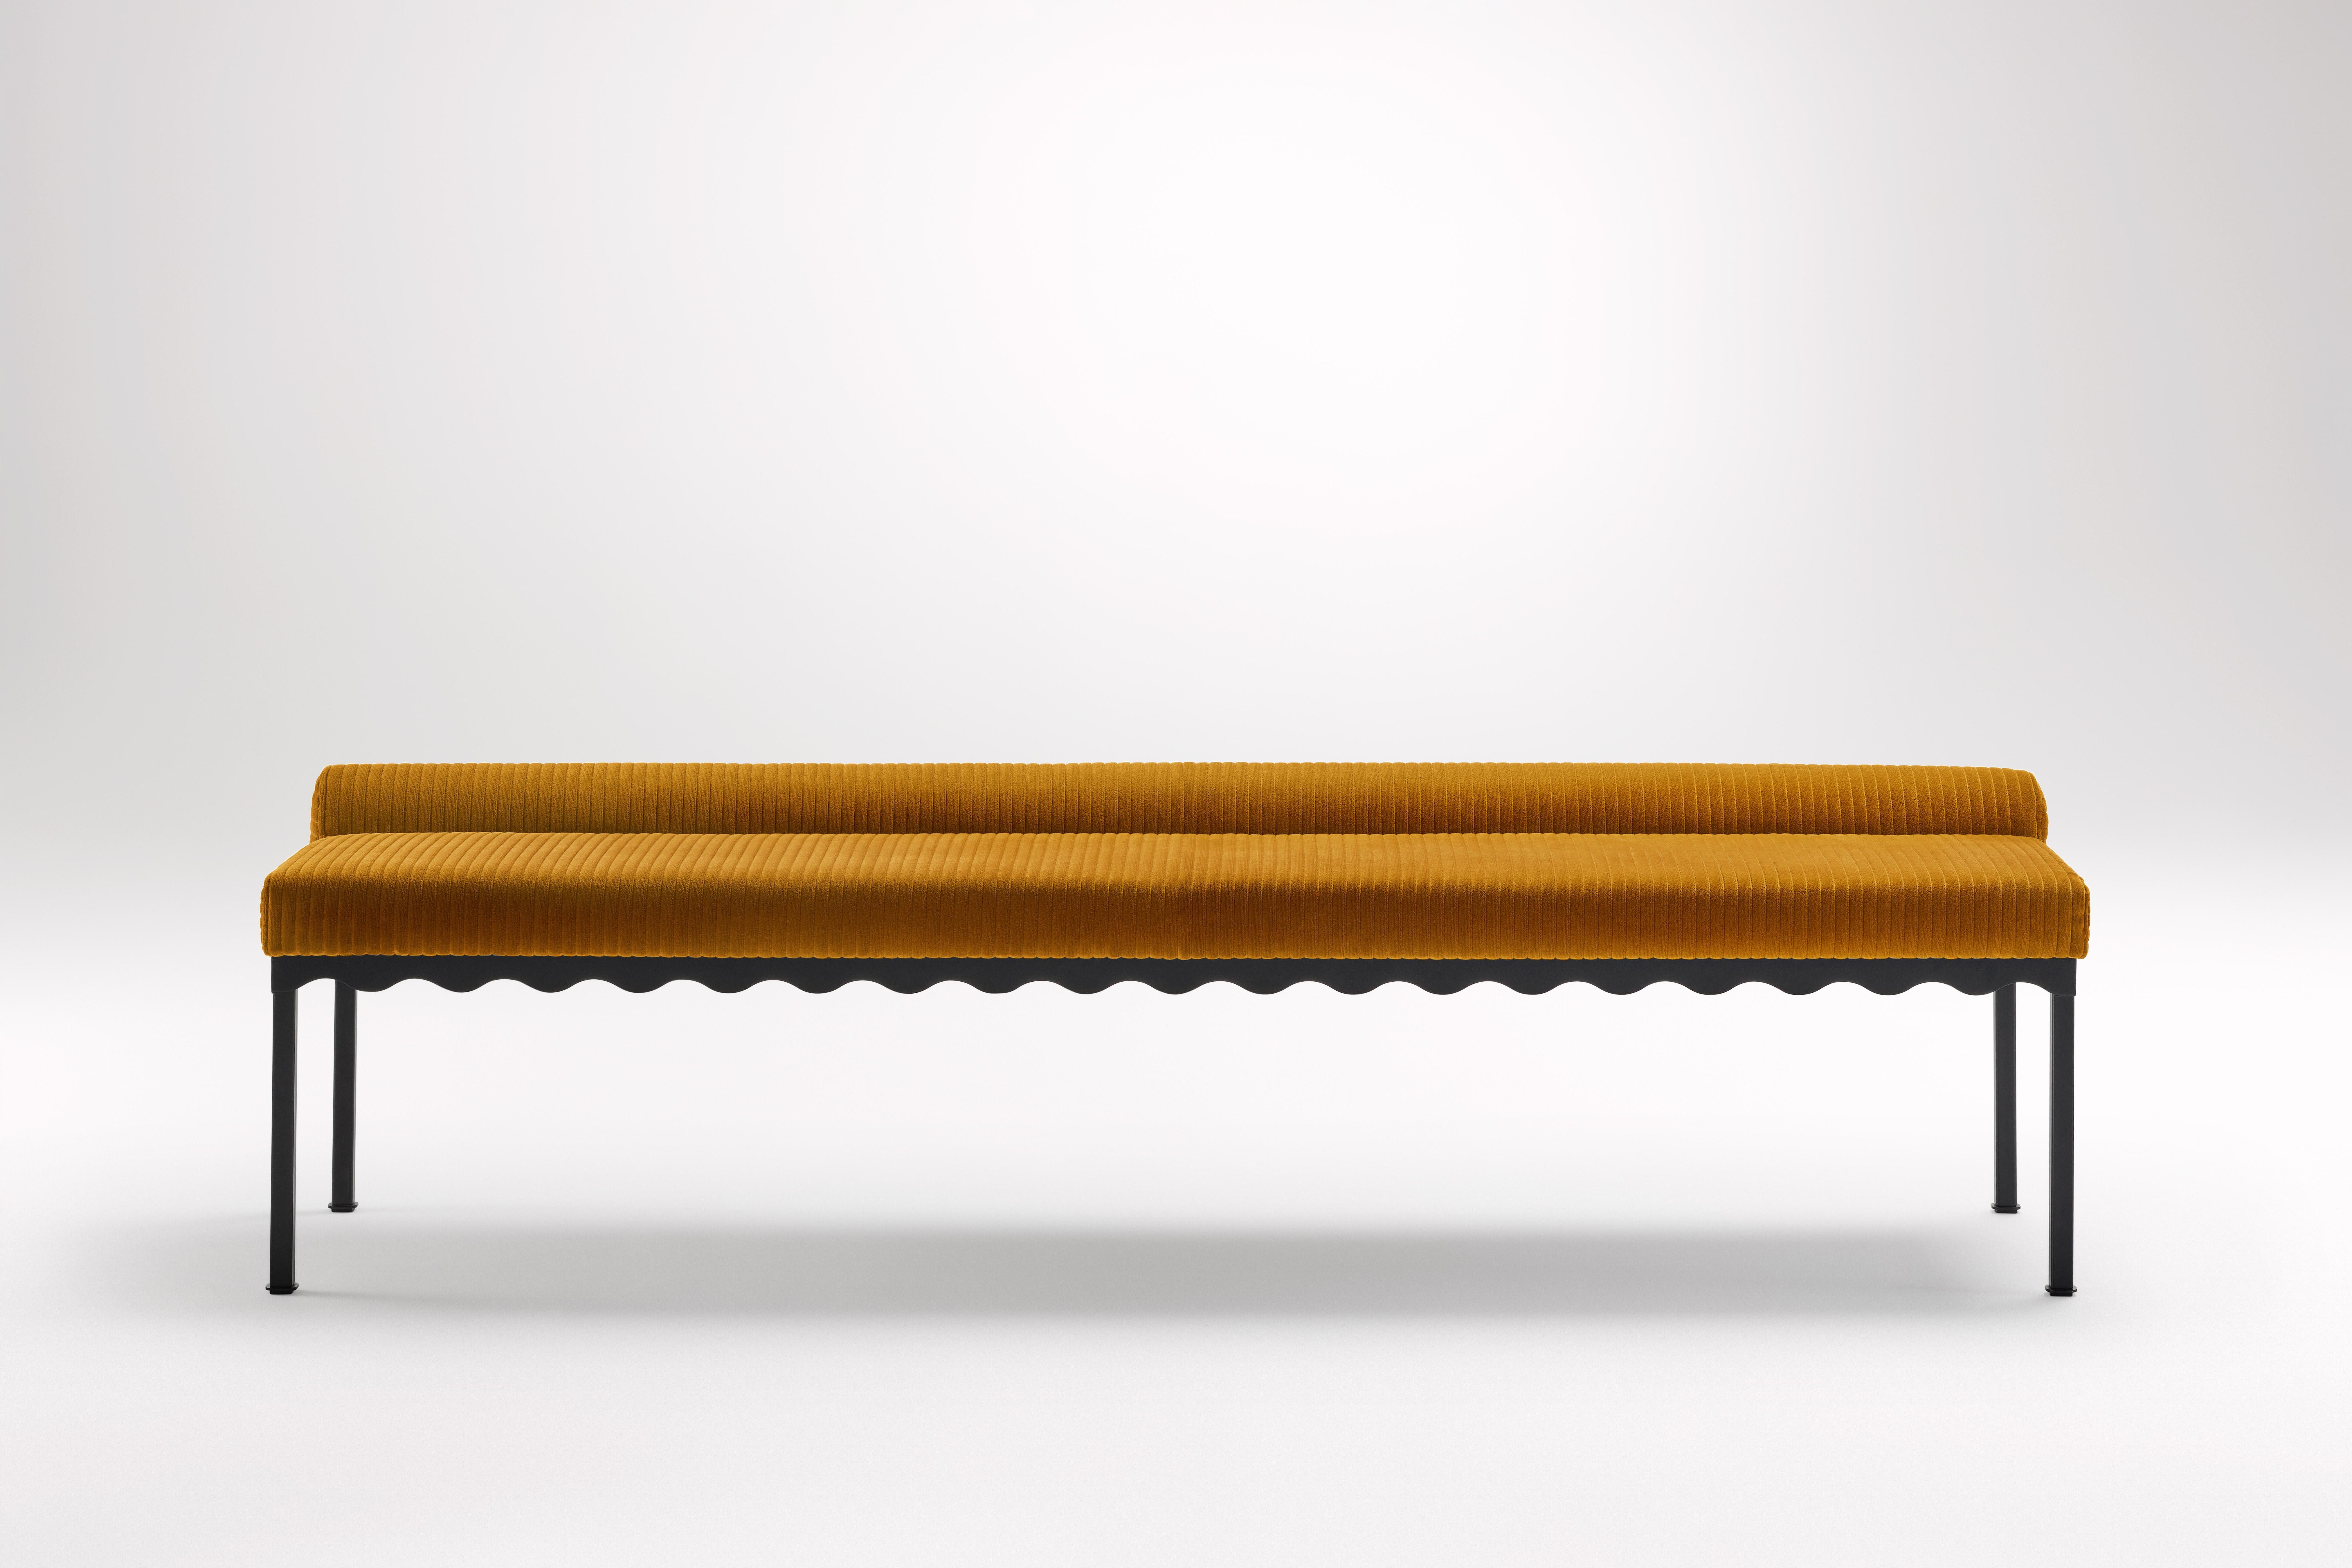 Mikado Bellini 2040 Bank von Coco Flip
Abmessungen: T 204 x B 54 x H 52,5 cm
MATERIALIEN: Holz / gepolsterte Platten, pulverbeschichteter Stahlrahmen. 
Gewicht: 30 kg
Rahmenausführungen: Textura Schwarz.

Coco Flip ist ein Studio für Möbel- und